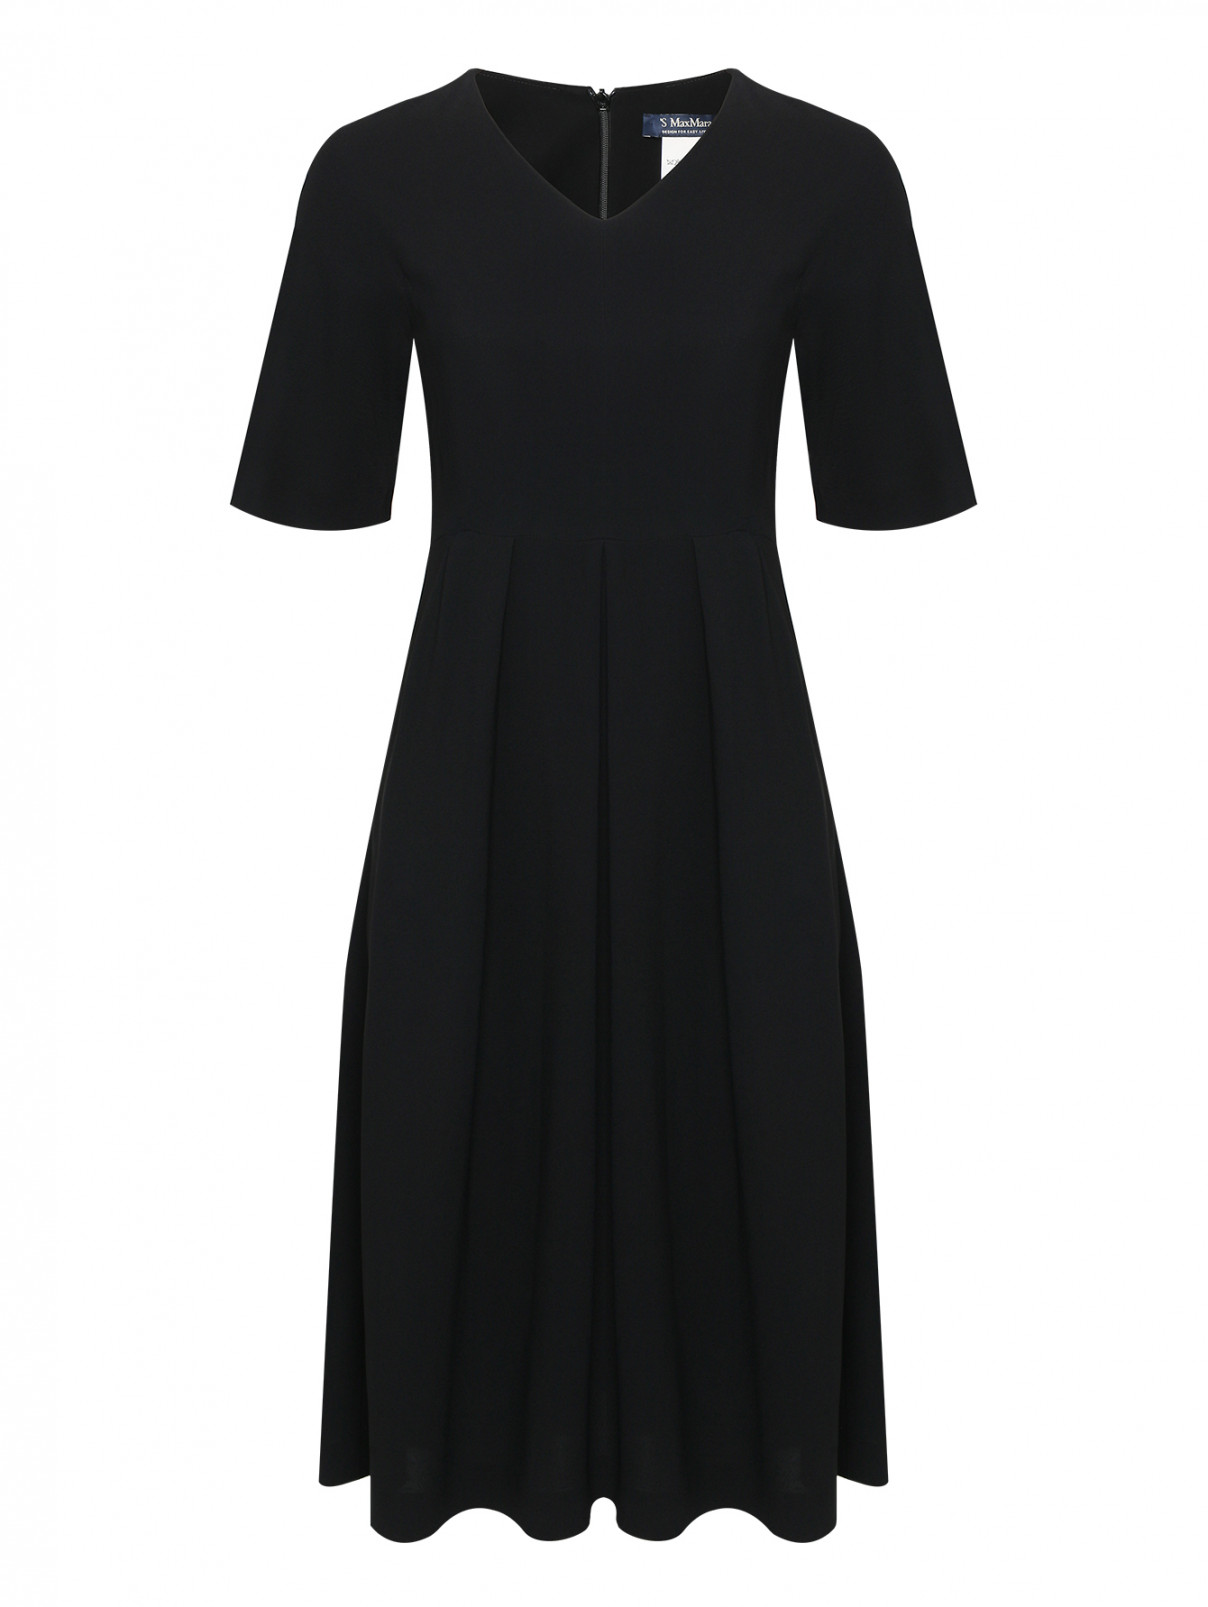 Платье с V-образным вырезом S Max Mara  –  Общий вид  – Цвет:  Черный